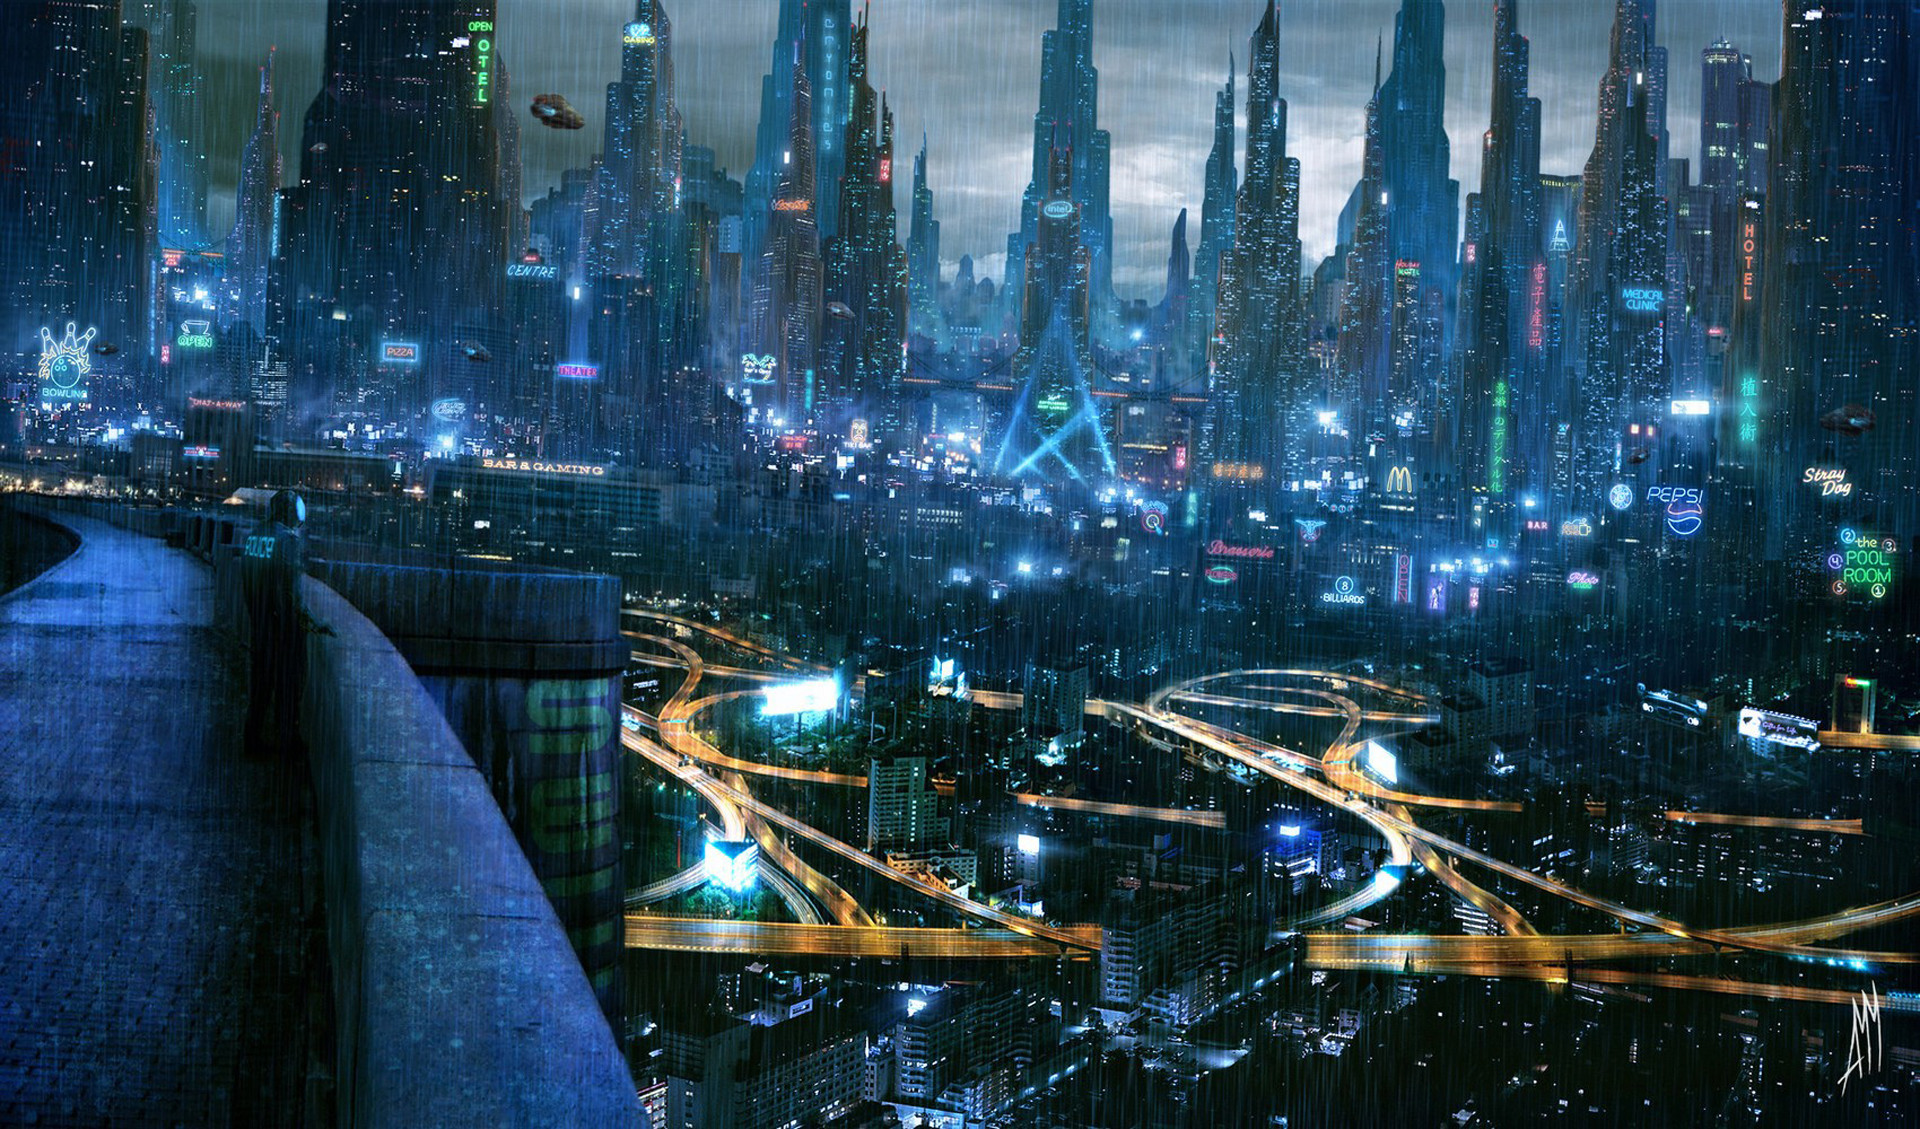 1920x1129 4k futuristic wallpaper - Google Search | Sci-Fi & Fantasy | Pinterest |  Future city, Cyberpunk and Fantasy city